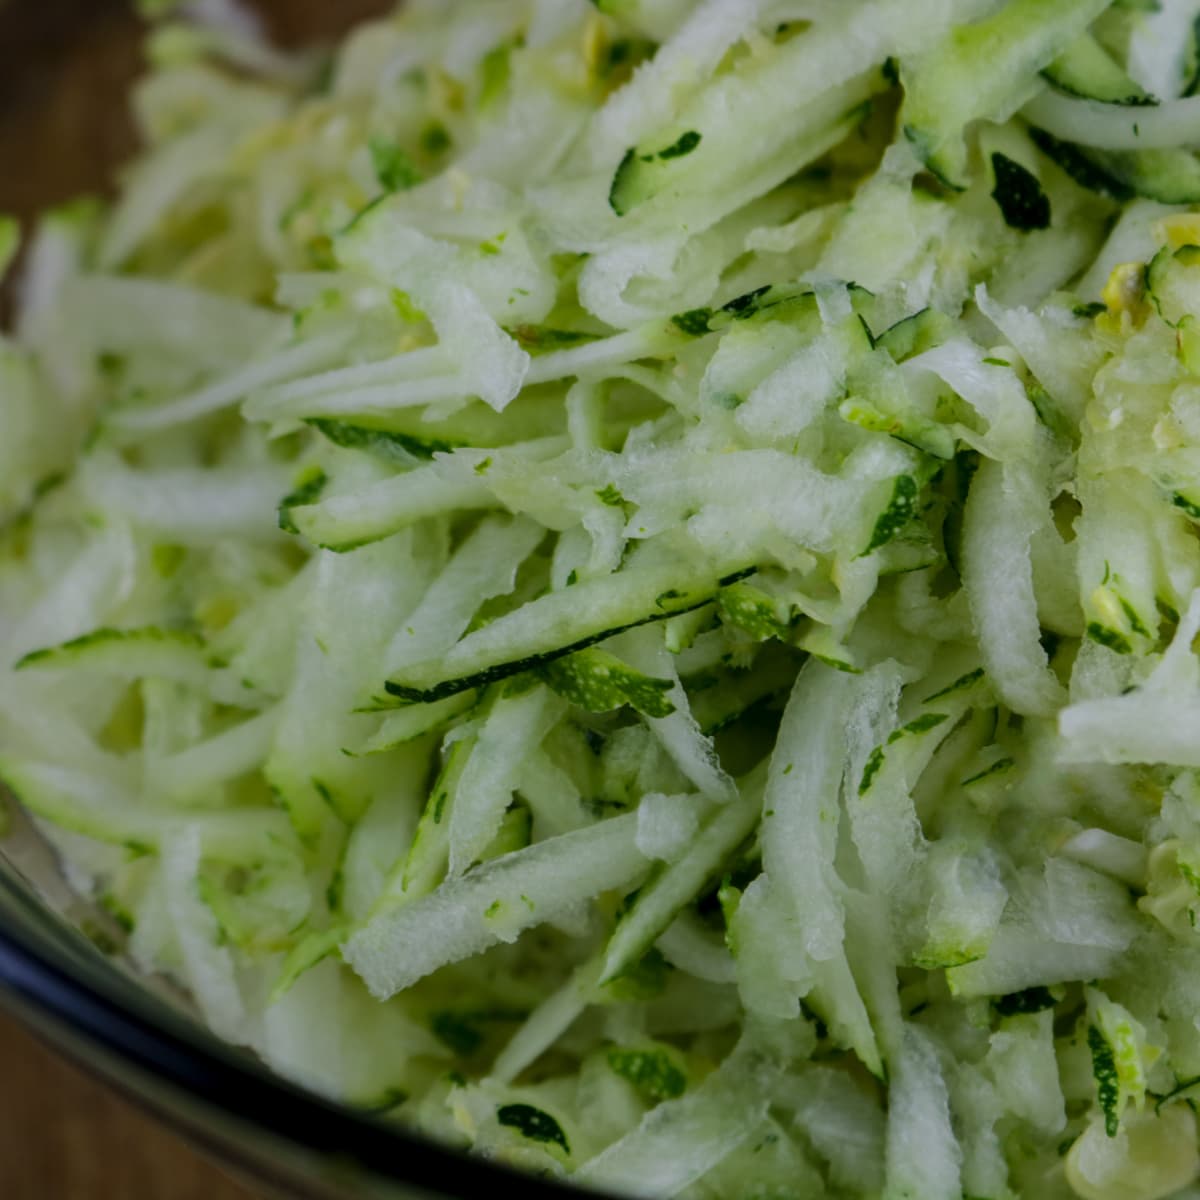 A bowl of shredded zucchini.